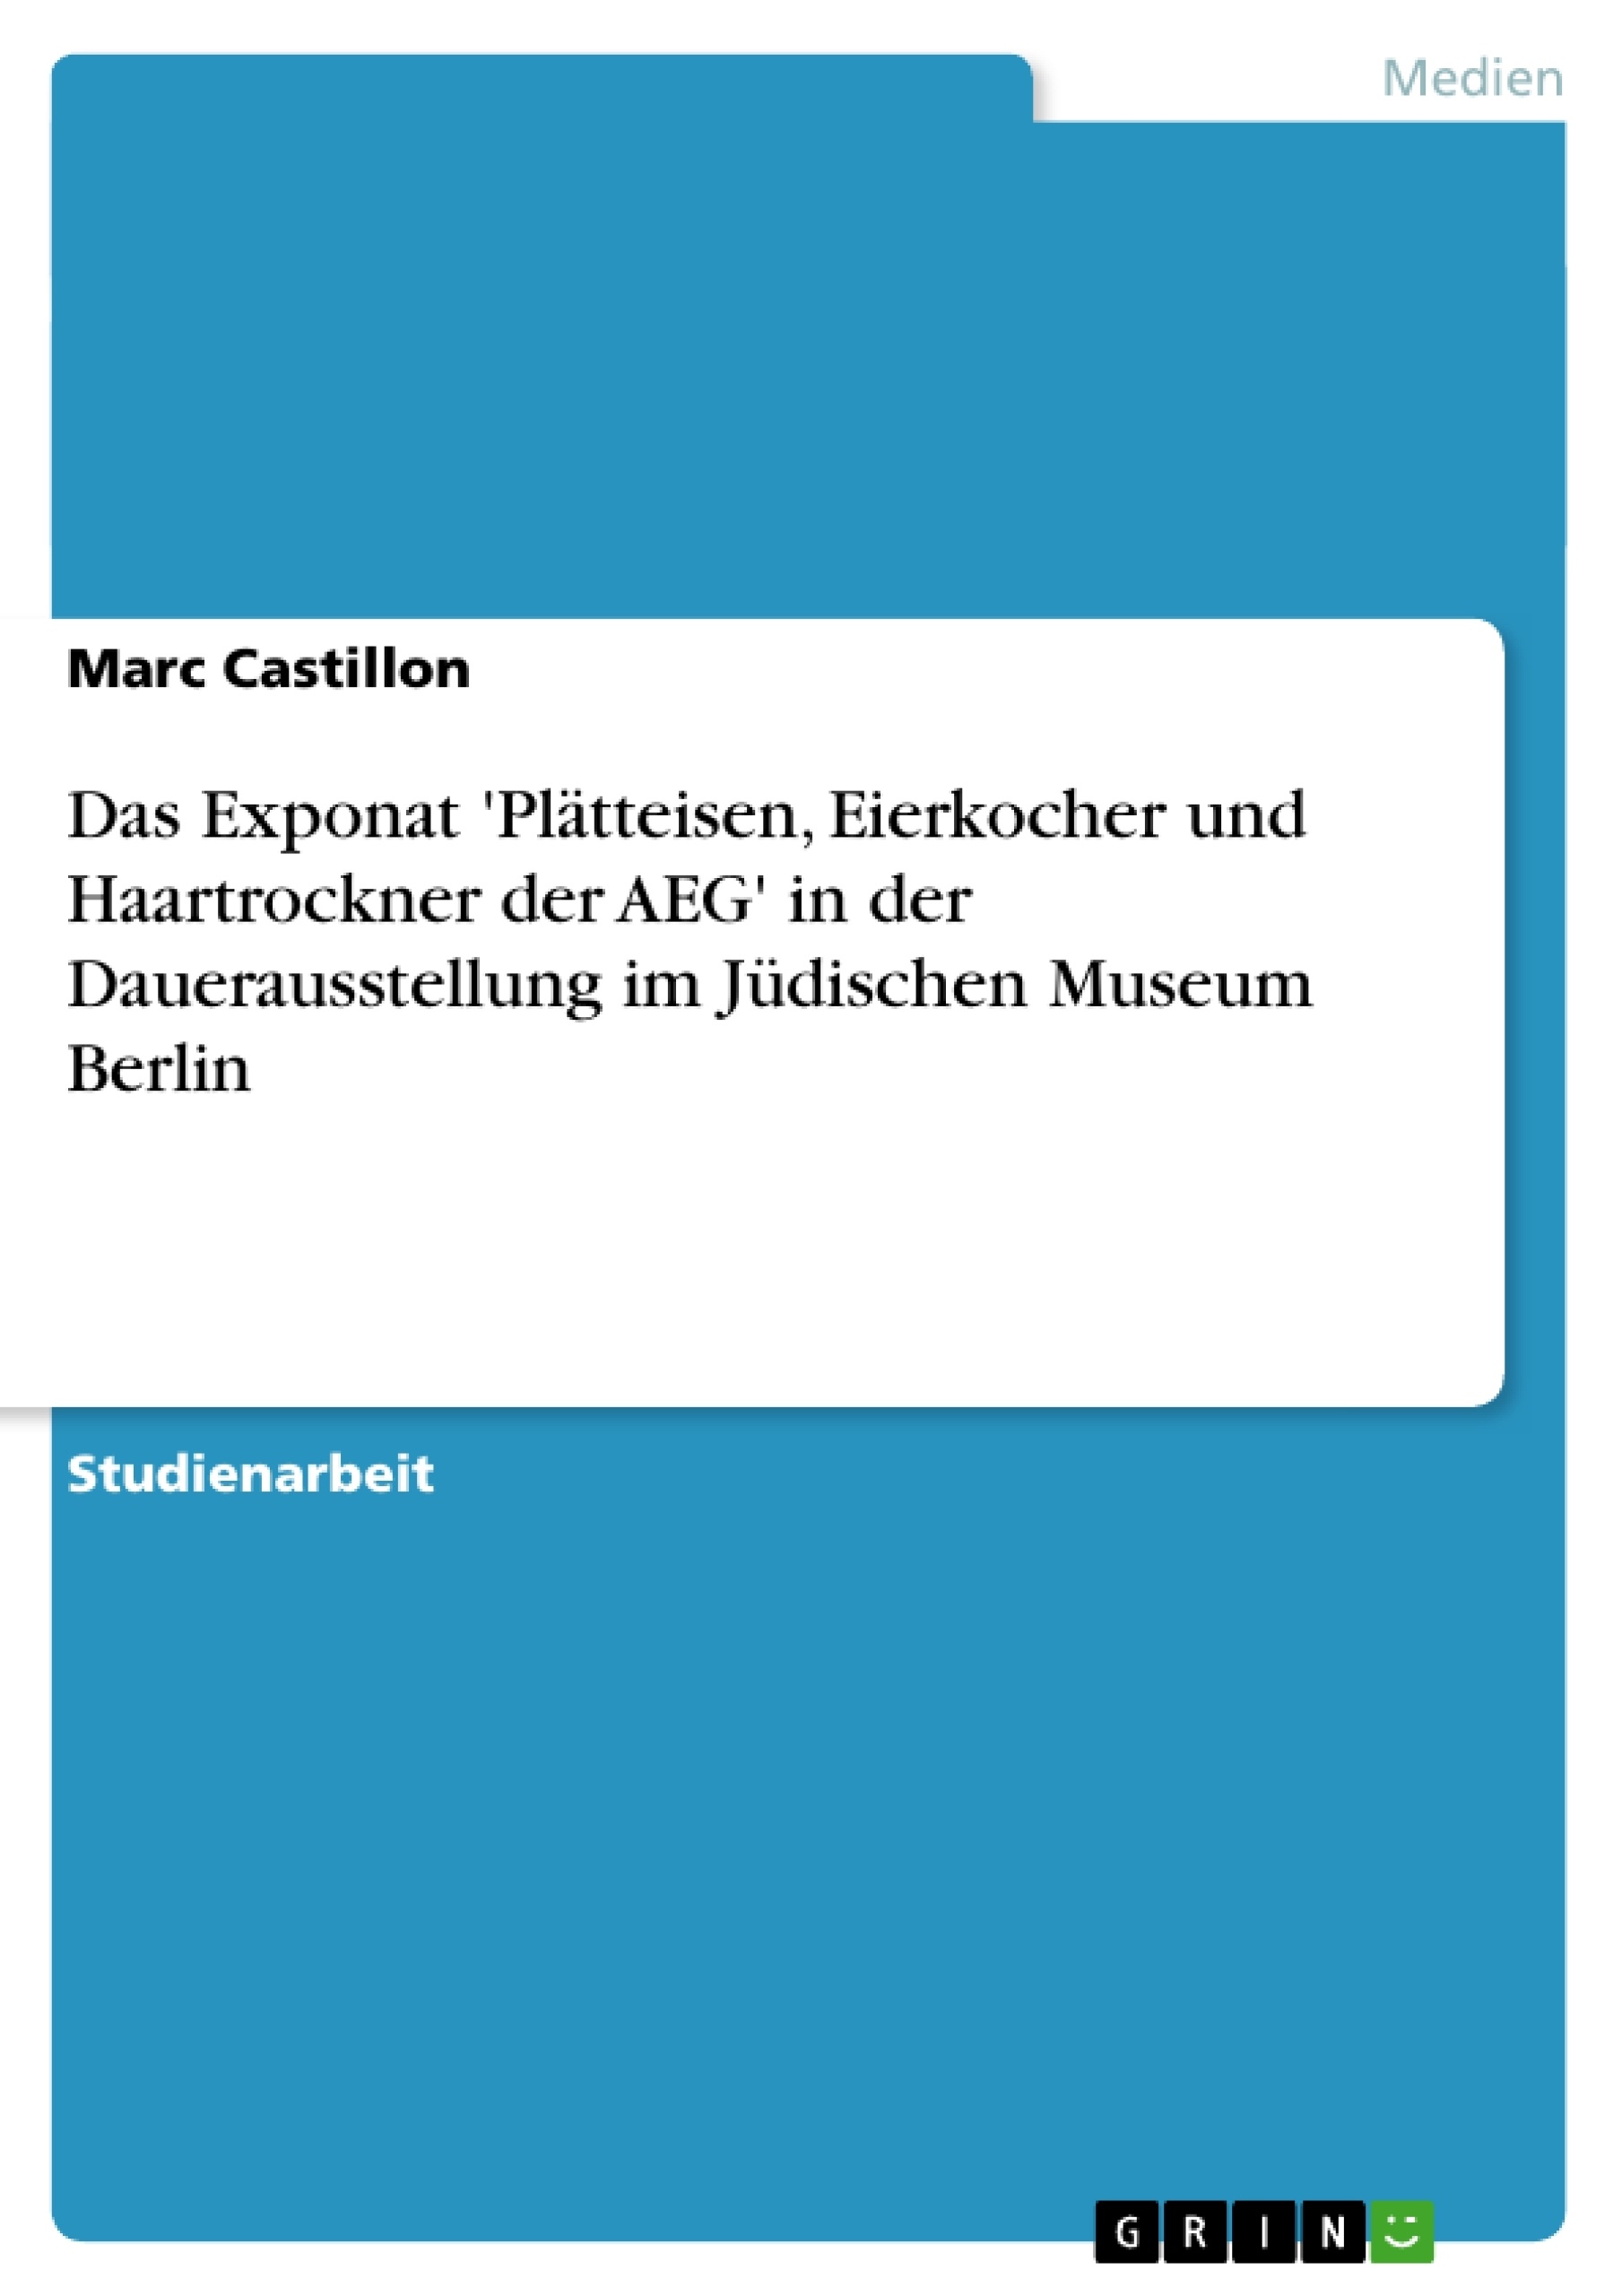 Título: Das Exponat  'Plätteisen, Eierkocher und Haartrockner der AEG'  in der Dauerausstellung im Jüdischen Museum Berlin